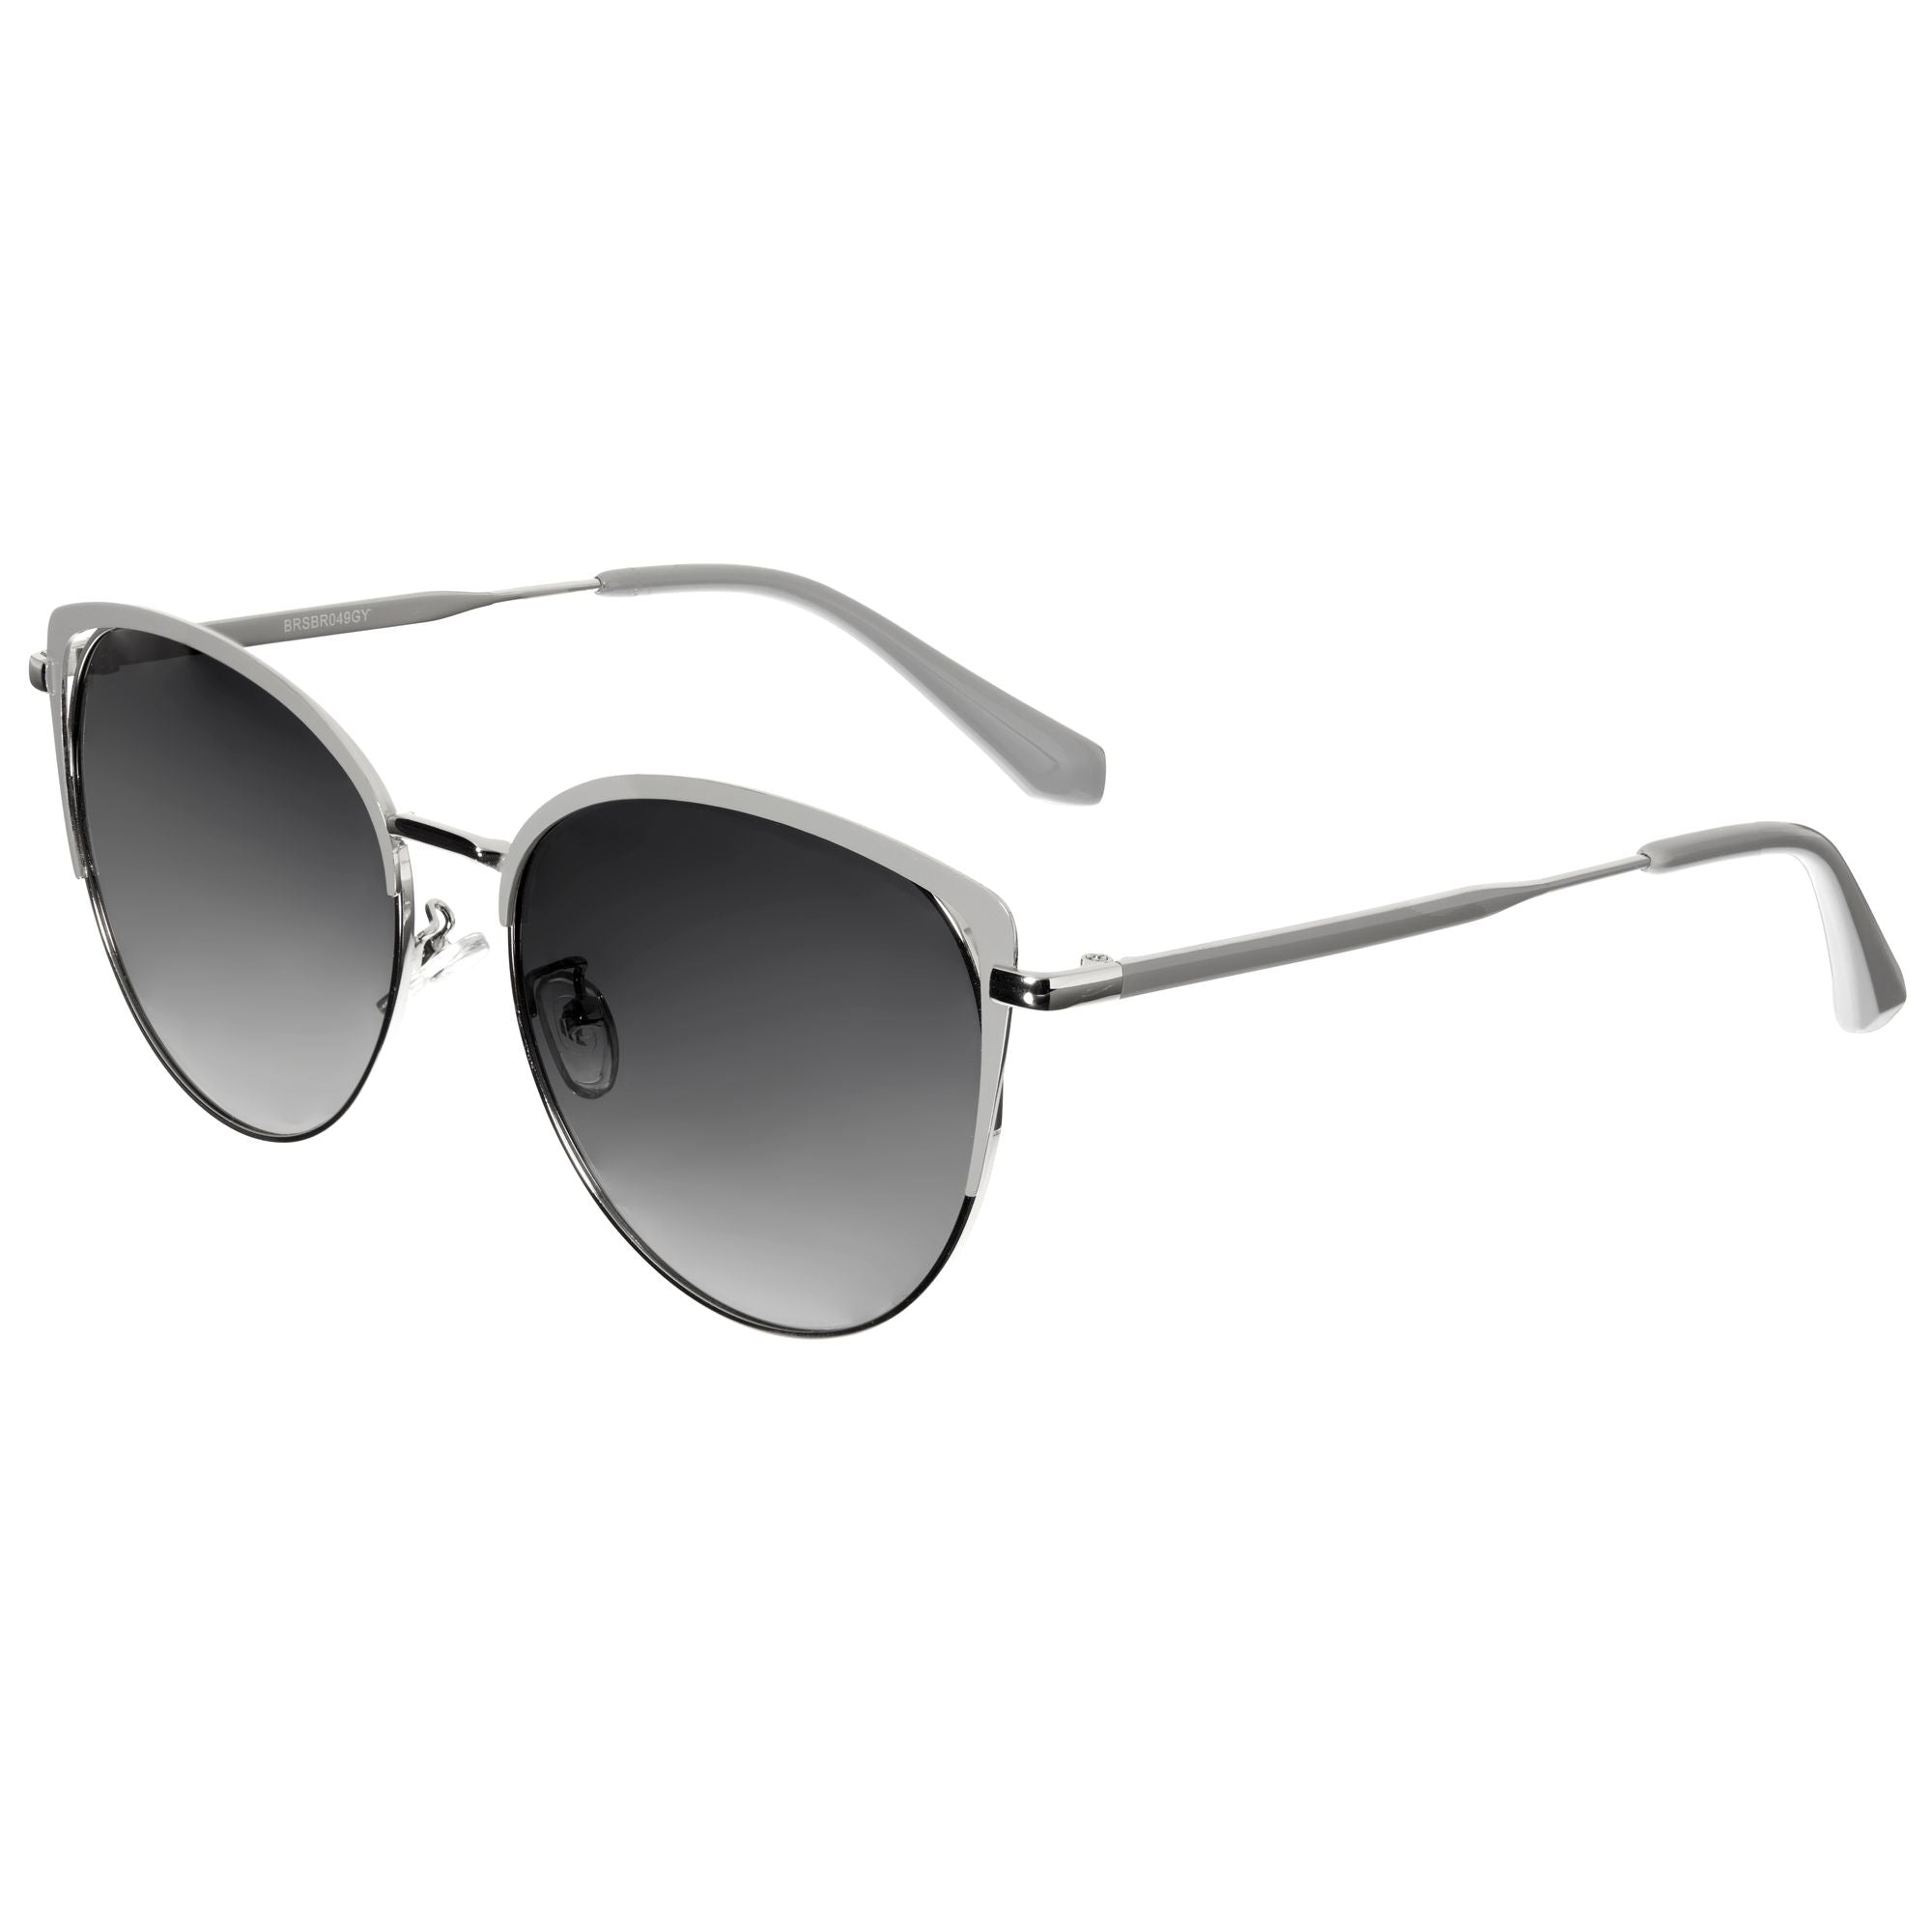 Bertha Darby Polarized Sunglasses - Silver/Grey - BRSBR049GY